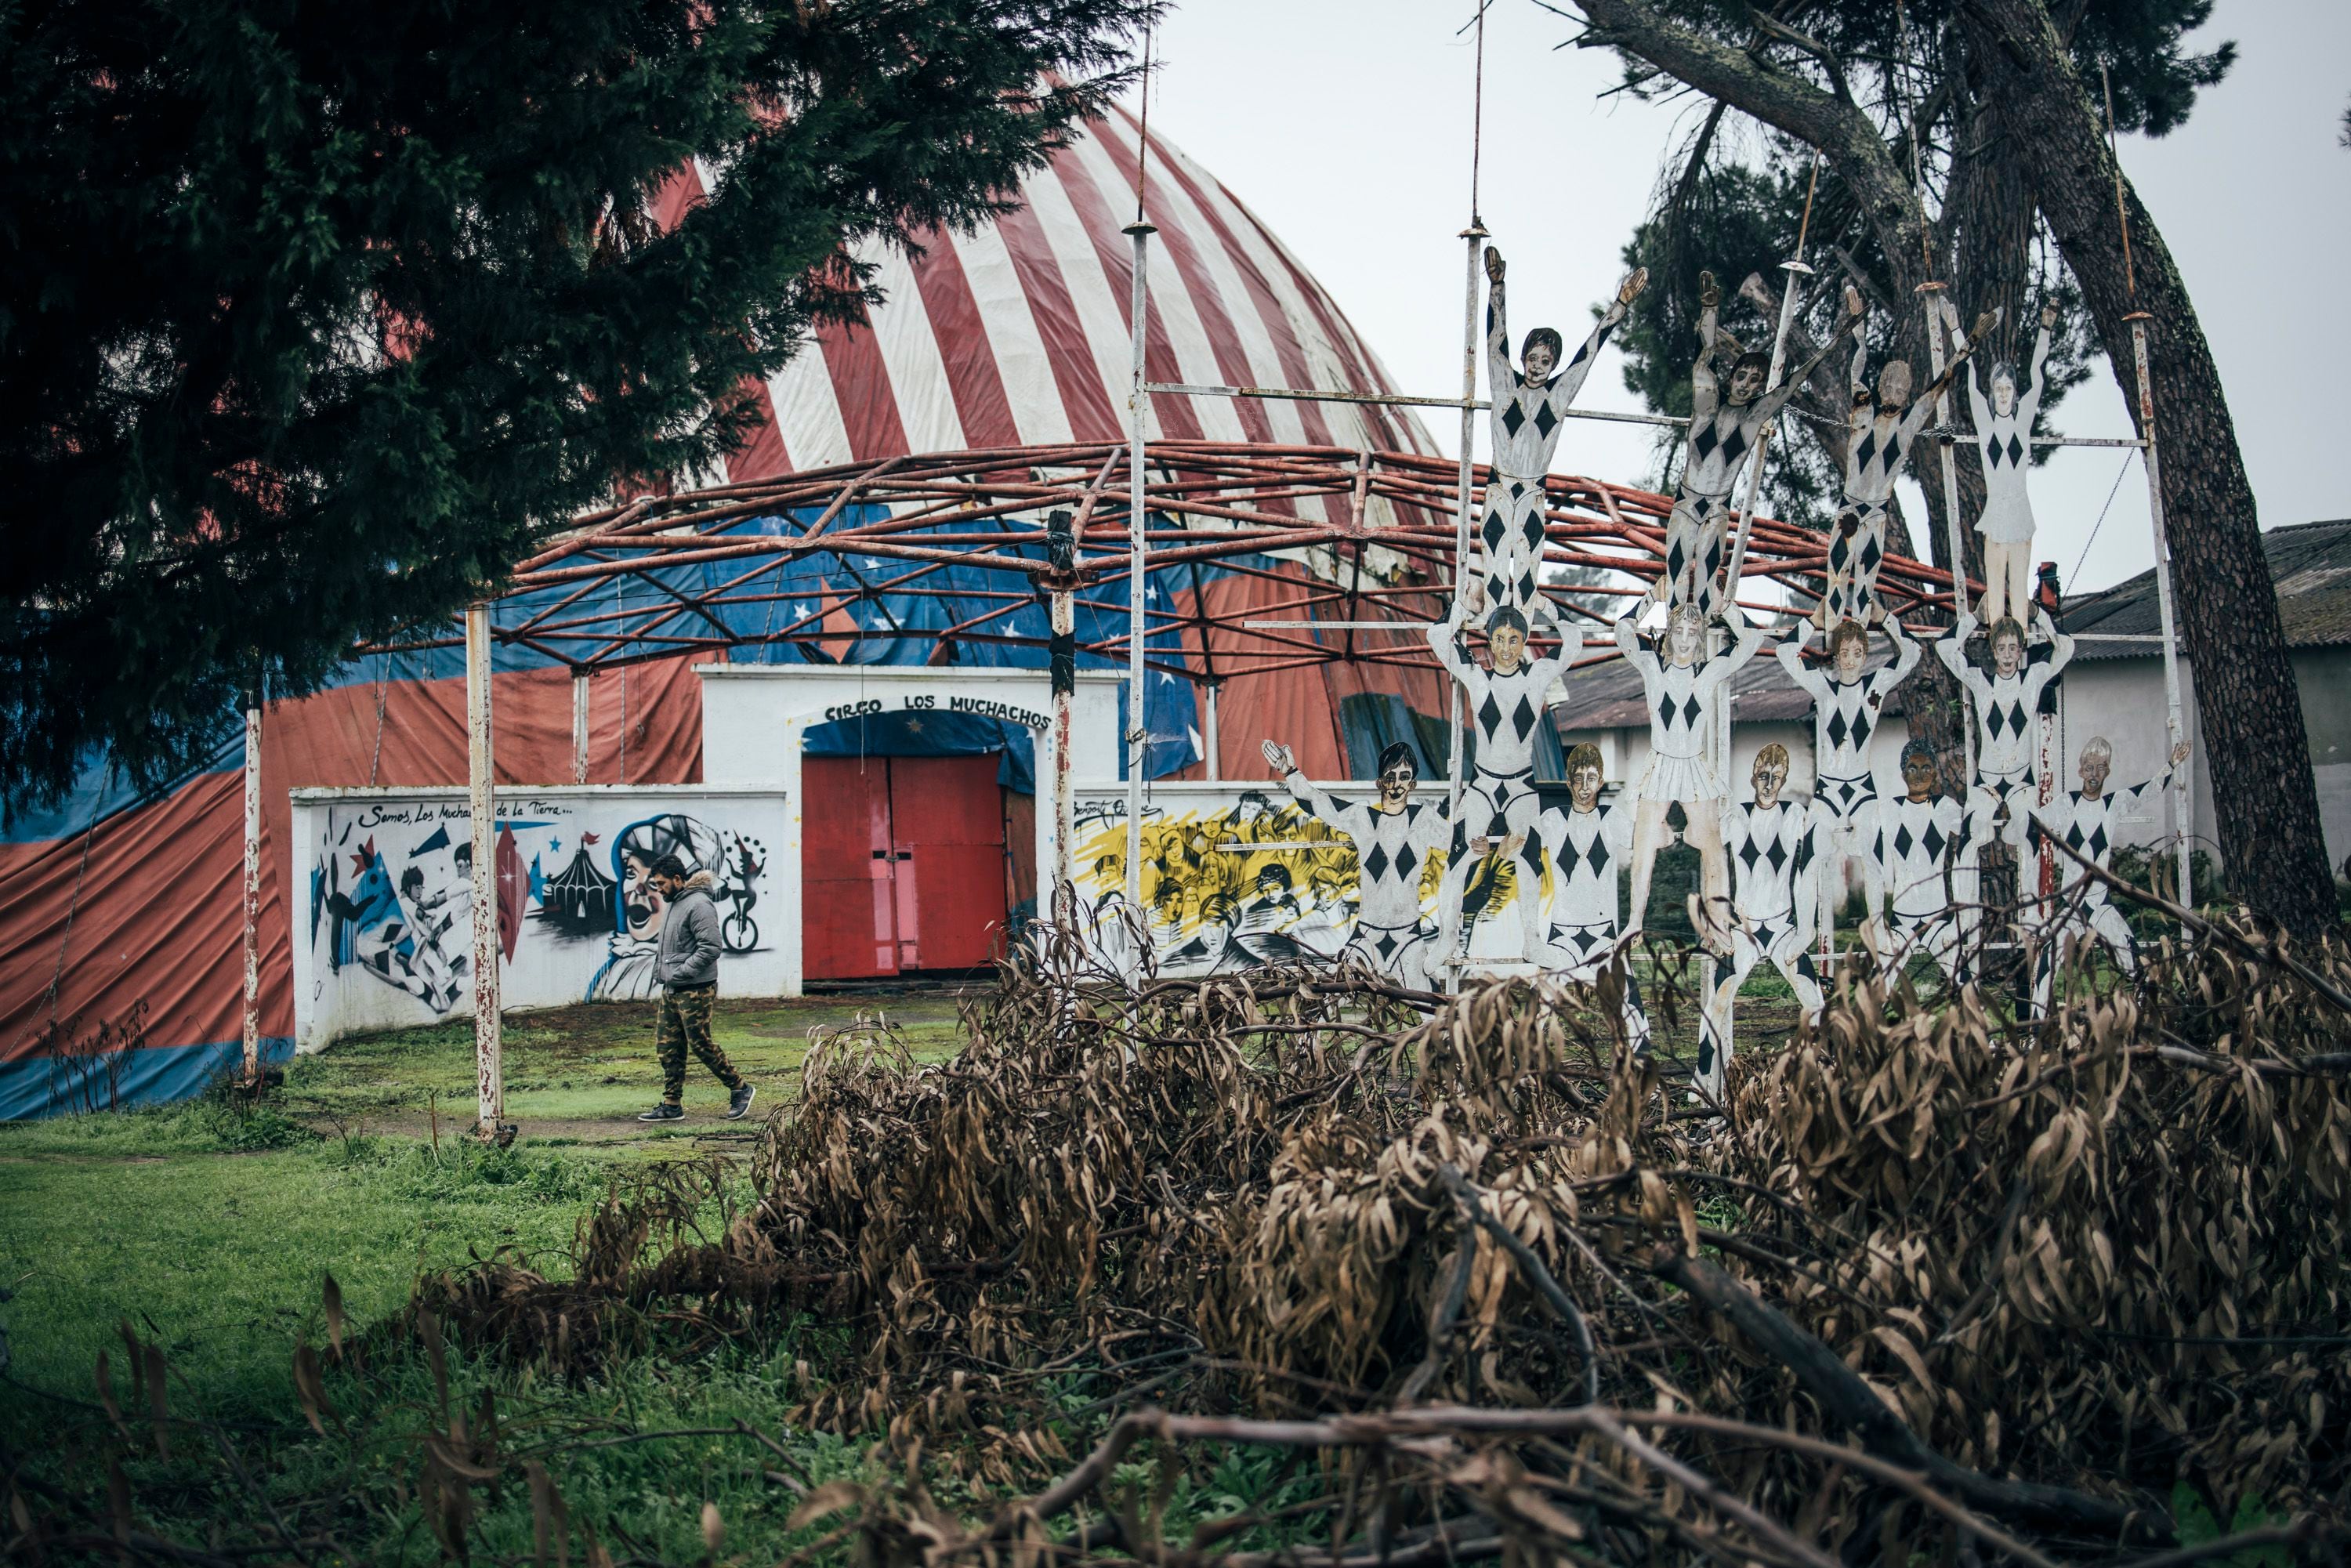 Uno de los jóvenes que aún vive en el lugar pasea por las ruinas del circo de la antigua Ciudad de los Muchachos de Benposta, a las afueras de Ourense.